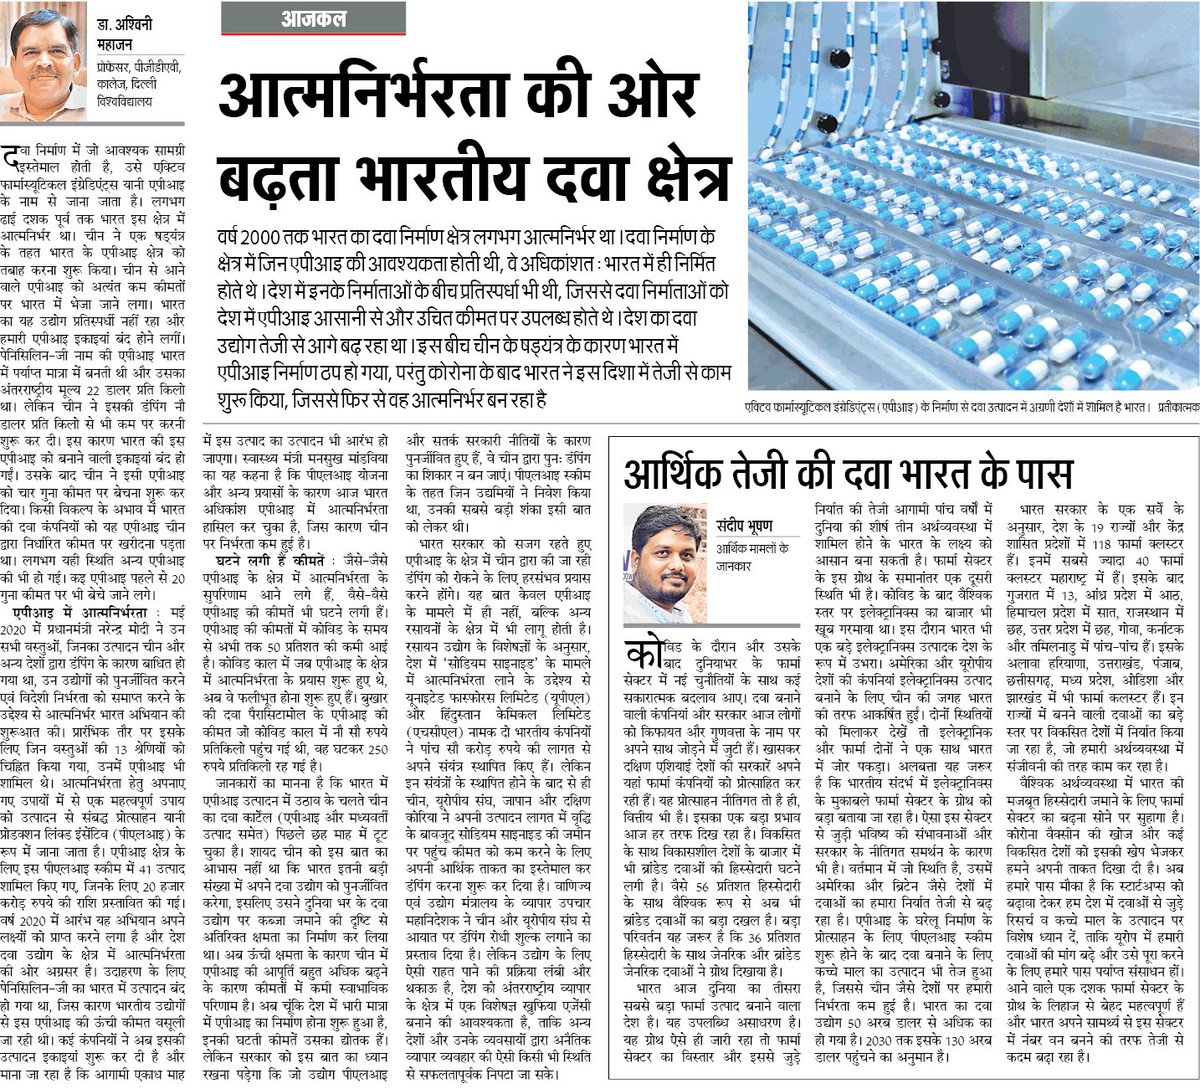 आत्मनिर्भरता की ओर बढ़ता भारतीय दवा उद्योग। चीन के षड्यंत्र को दी मात। #AatmanirbharBharat